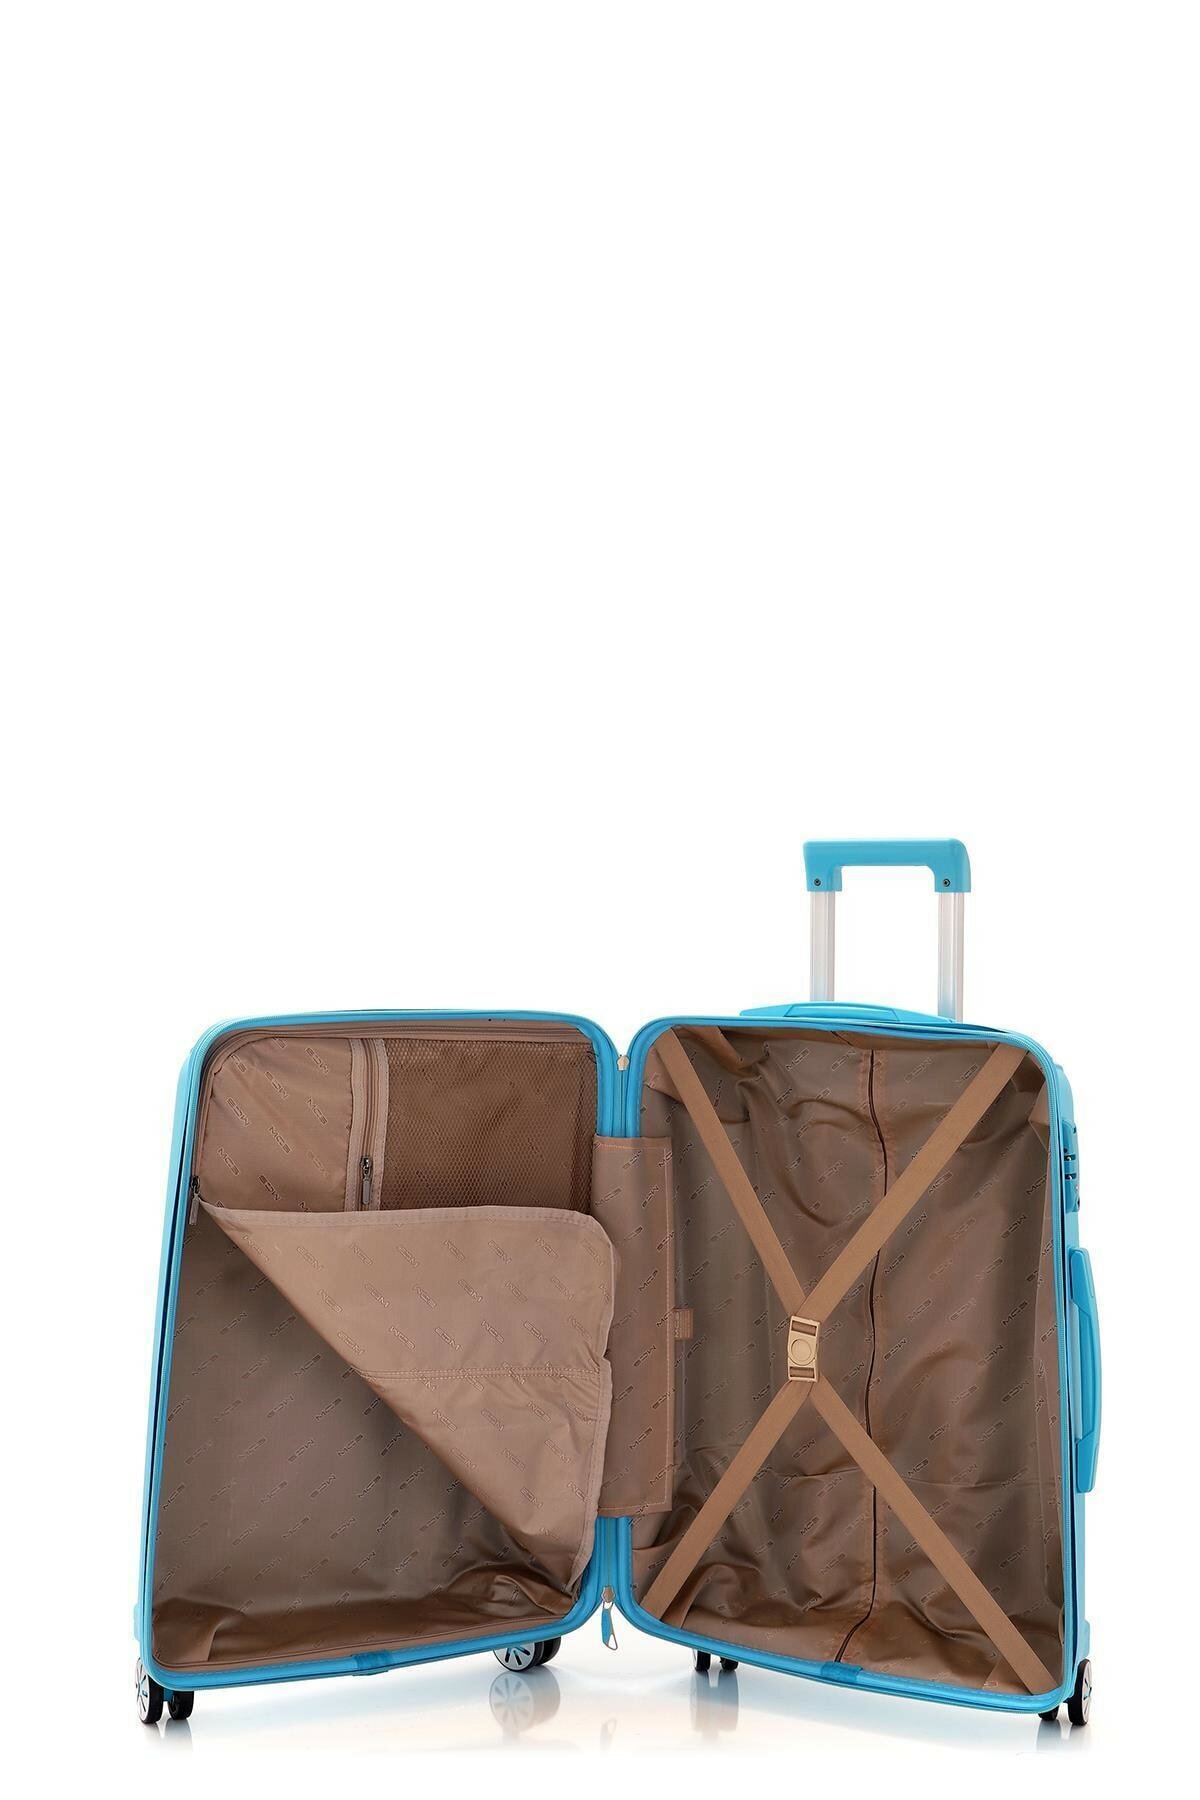 Маленький чемодан для ручьной клади из полипропилена MCS V305 S L.BLUE! Для 8-10 кг! - 2